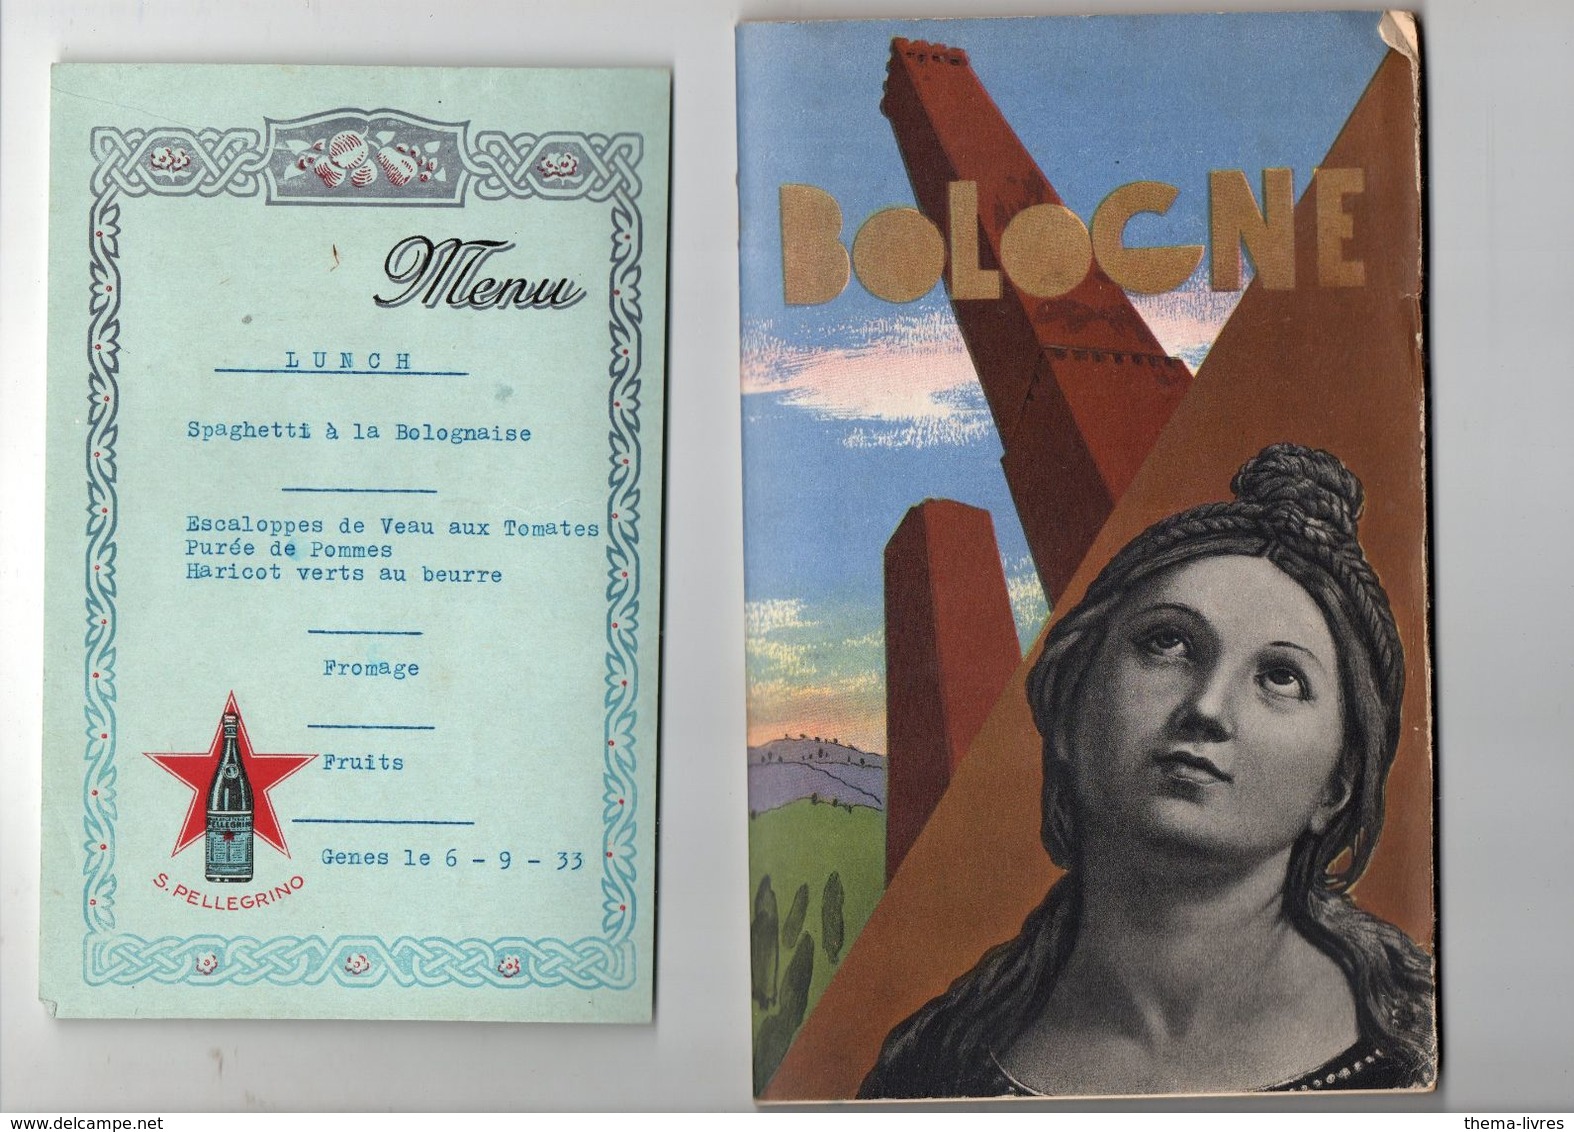 journal de voyage en Italie 1933 2 fortes chemises avec des centaines de documents inclus